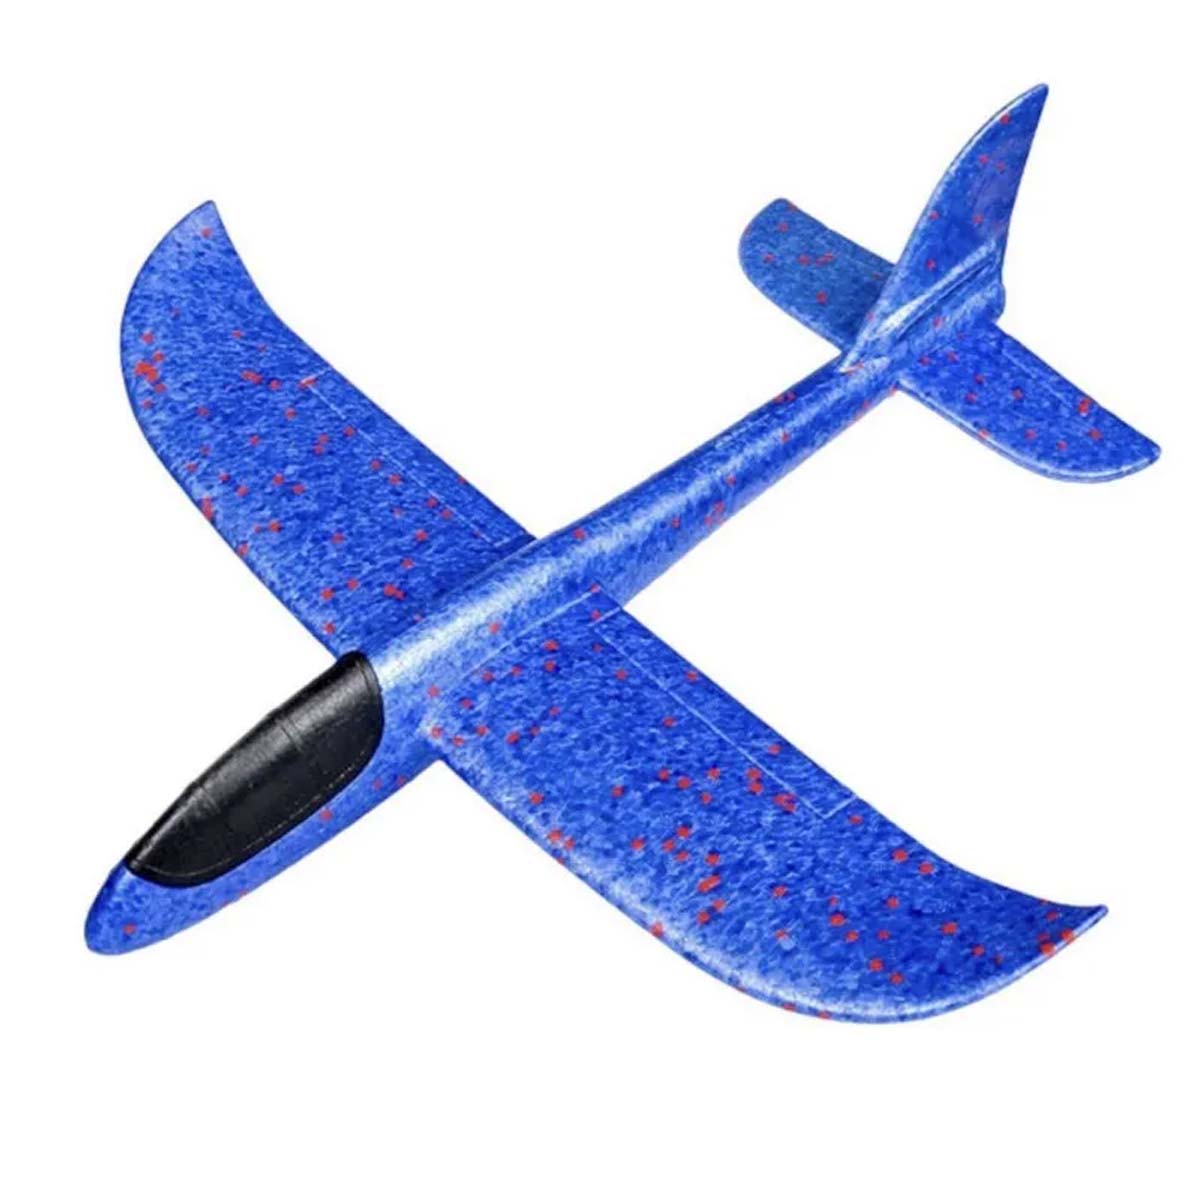 Метательный самолет из пенопласта, 45 см, цвет синий